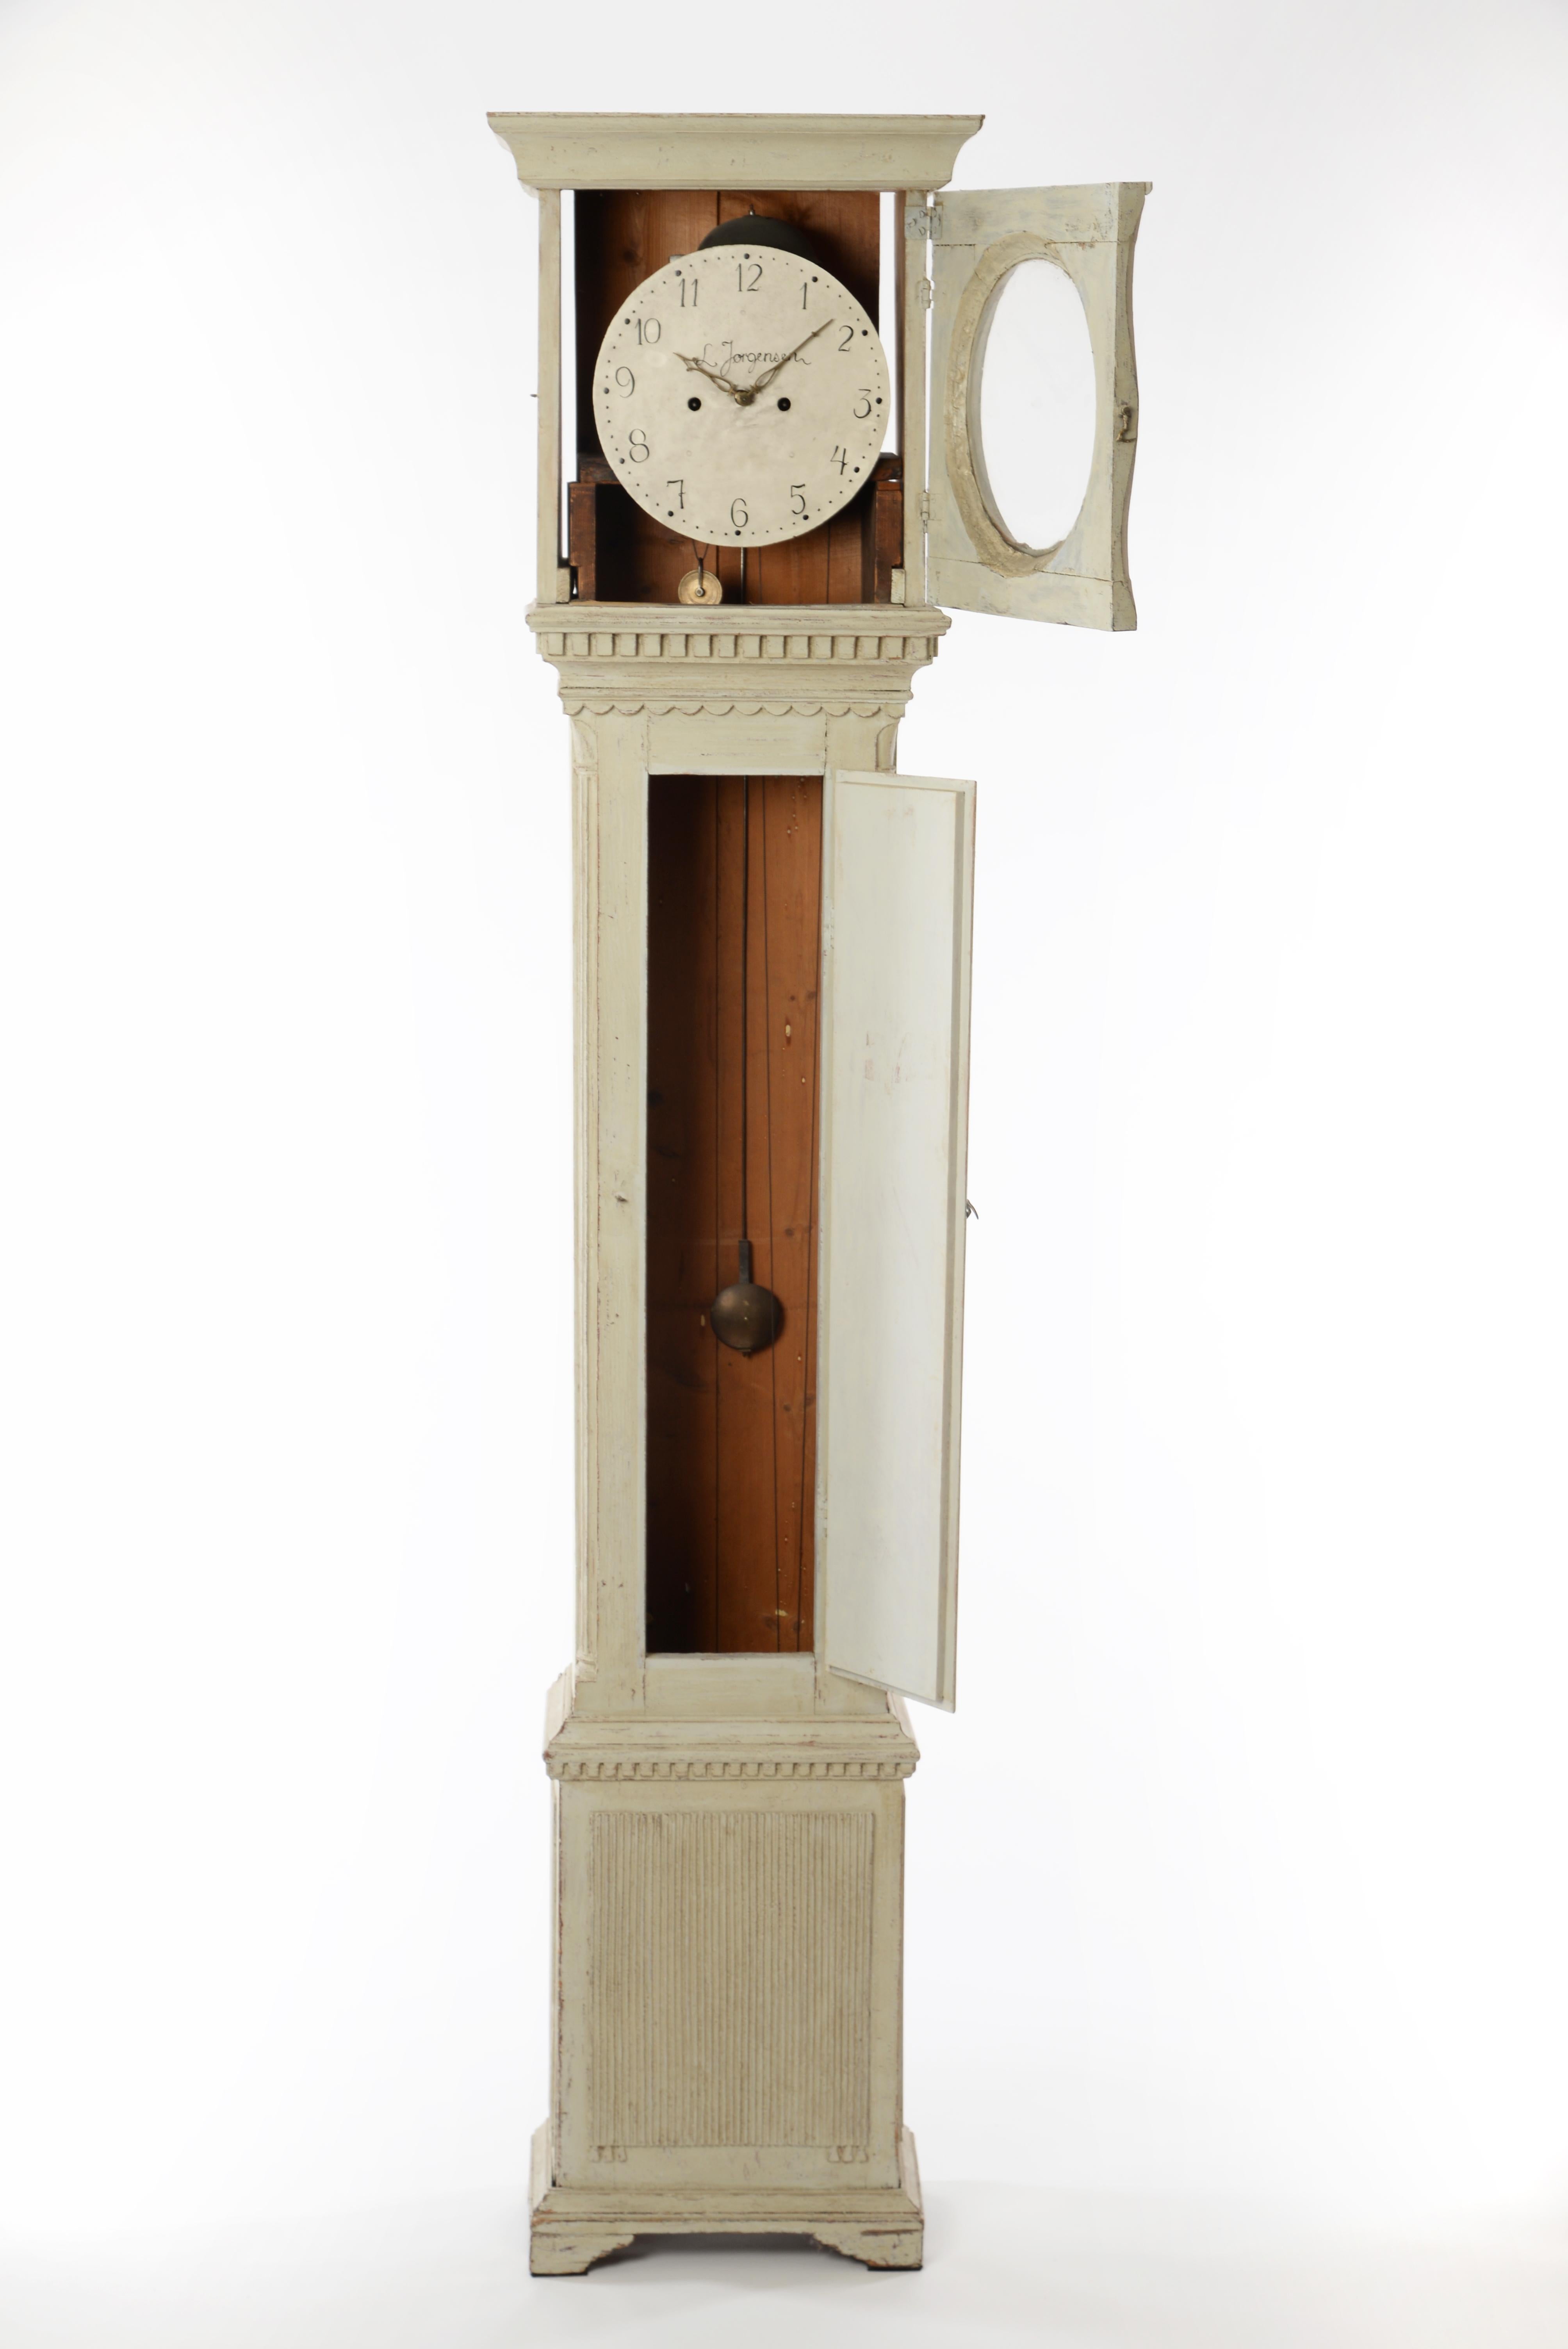 Cette belle horloge suédoise du 19e siècle, de forme allongée, présente des lignes très nettes, droites et simples. Les décorations sont exquises mais subtiles. Le visage présente des chiffres traditionnels et conserve sa face, ses aiguilles et son